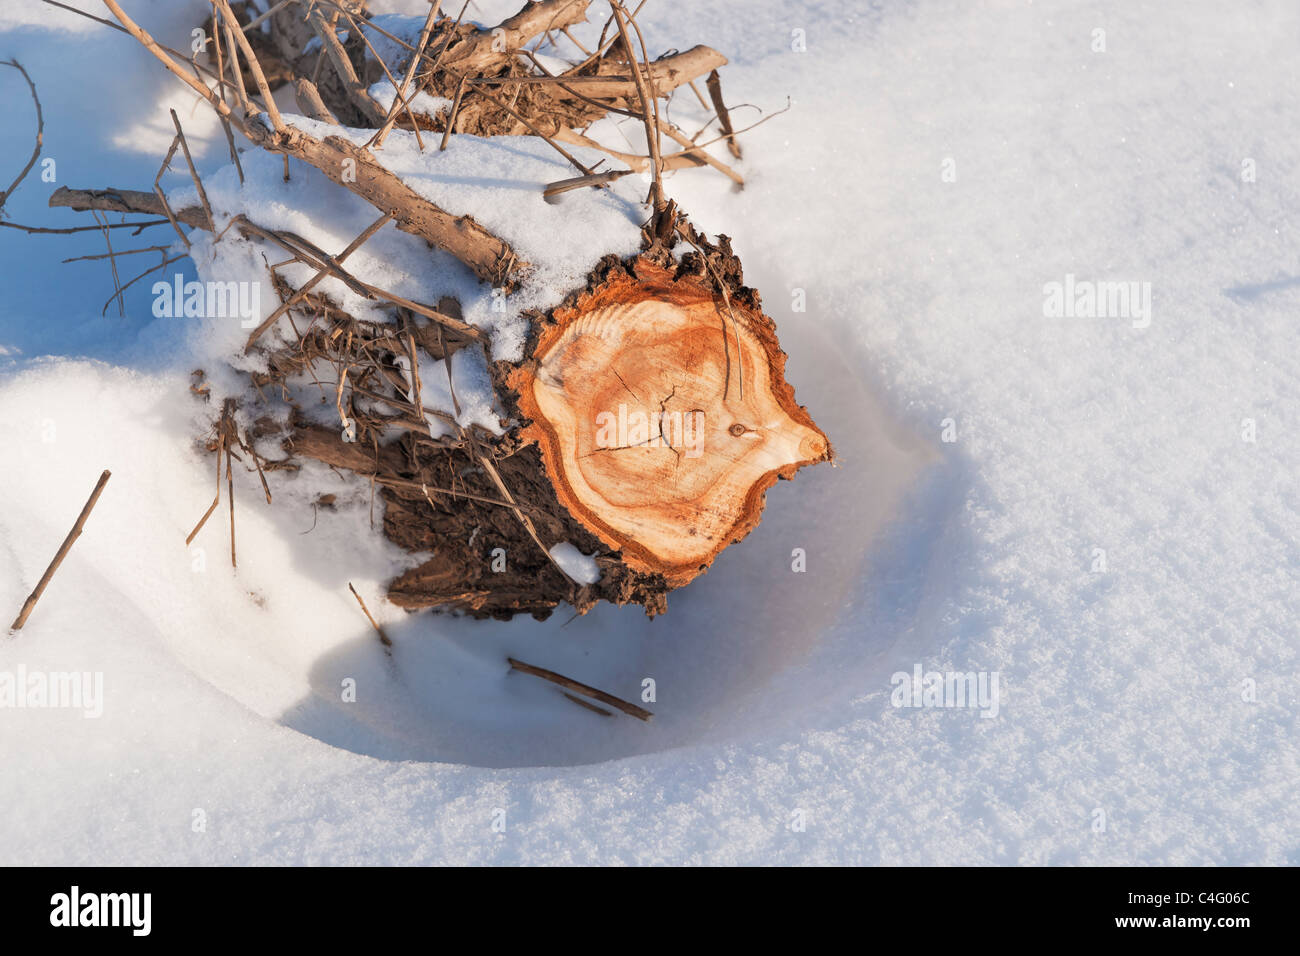 ein abgesaegter Baumstamm liegt im Schnee | a sawed-off tree trunk lies in the snow Stock Photo